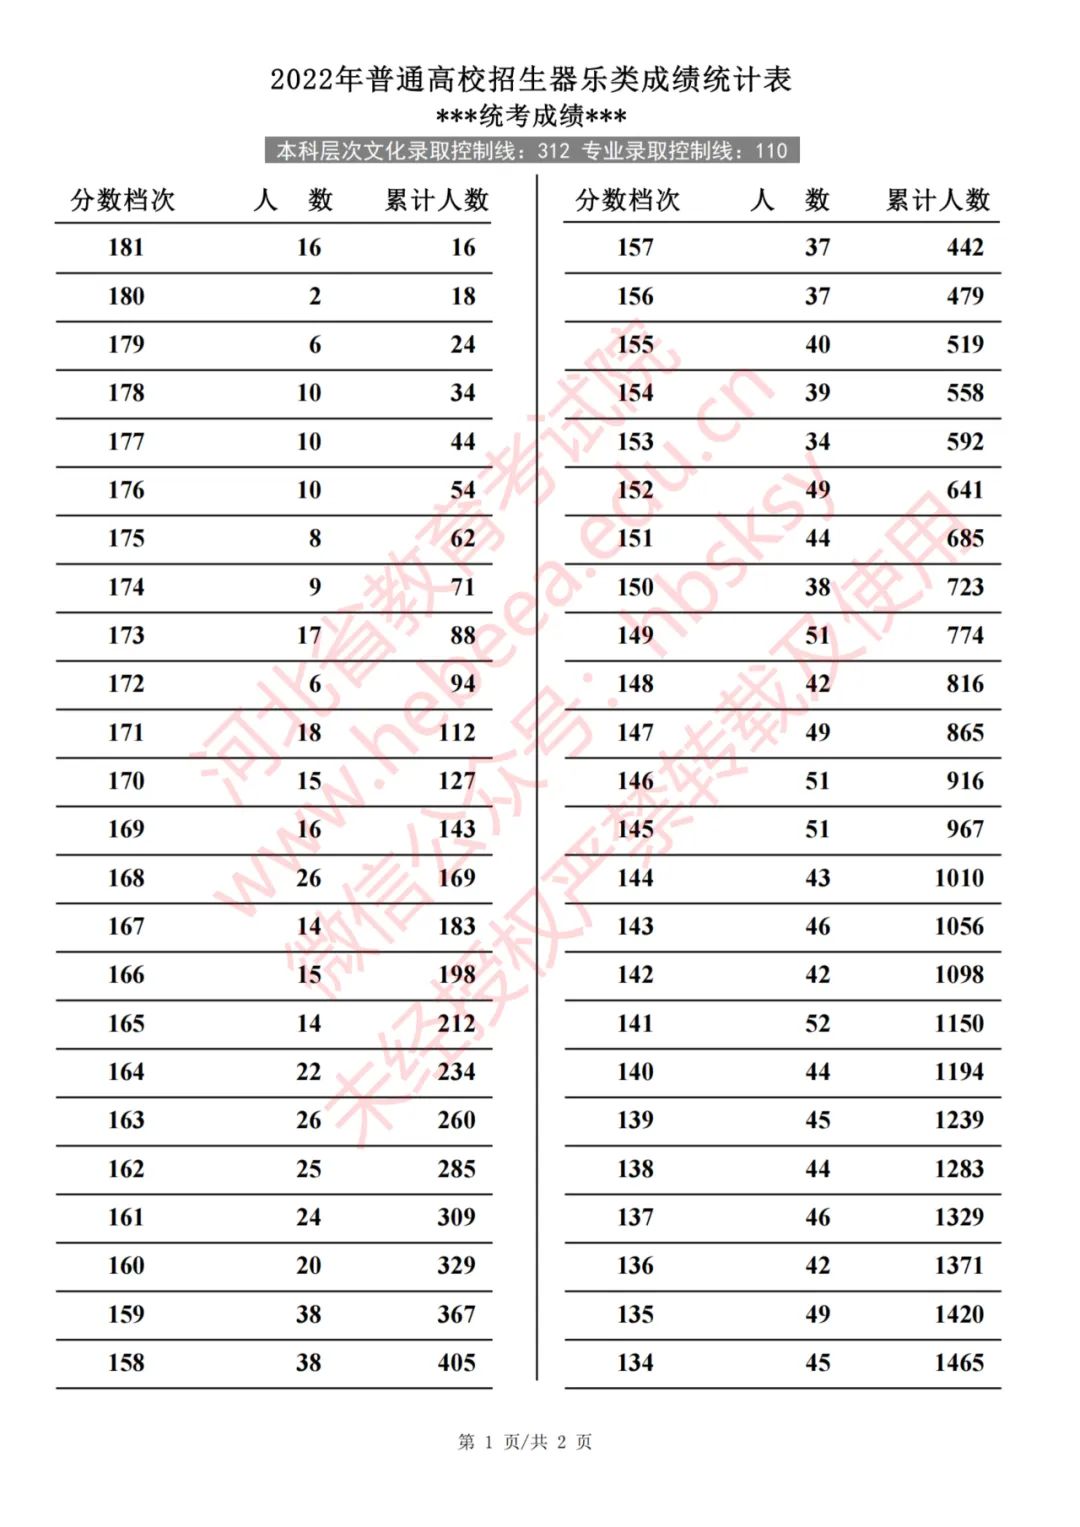 2022年河北省普通高校招生器乐类成绩统计表(专业成绩·综合成绩)